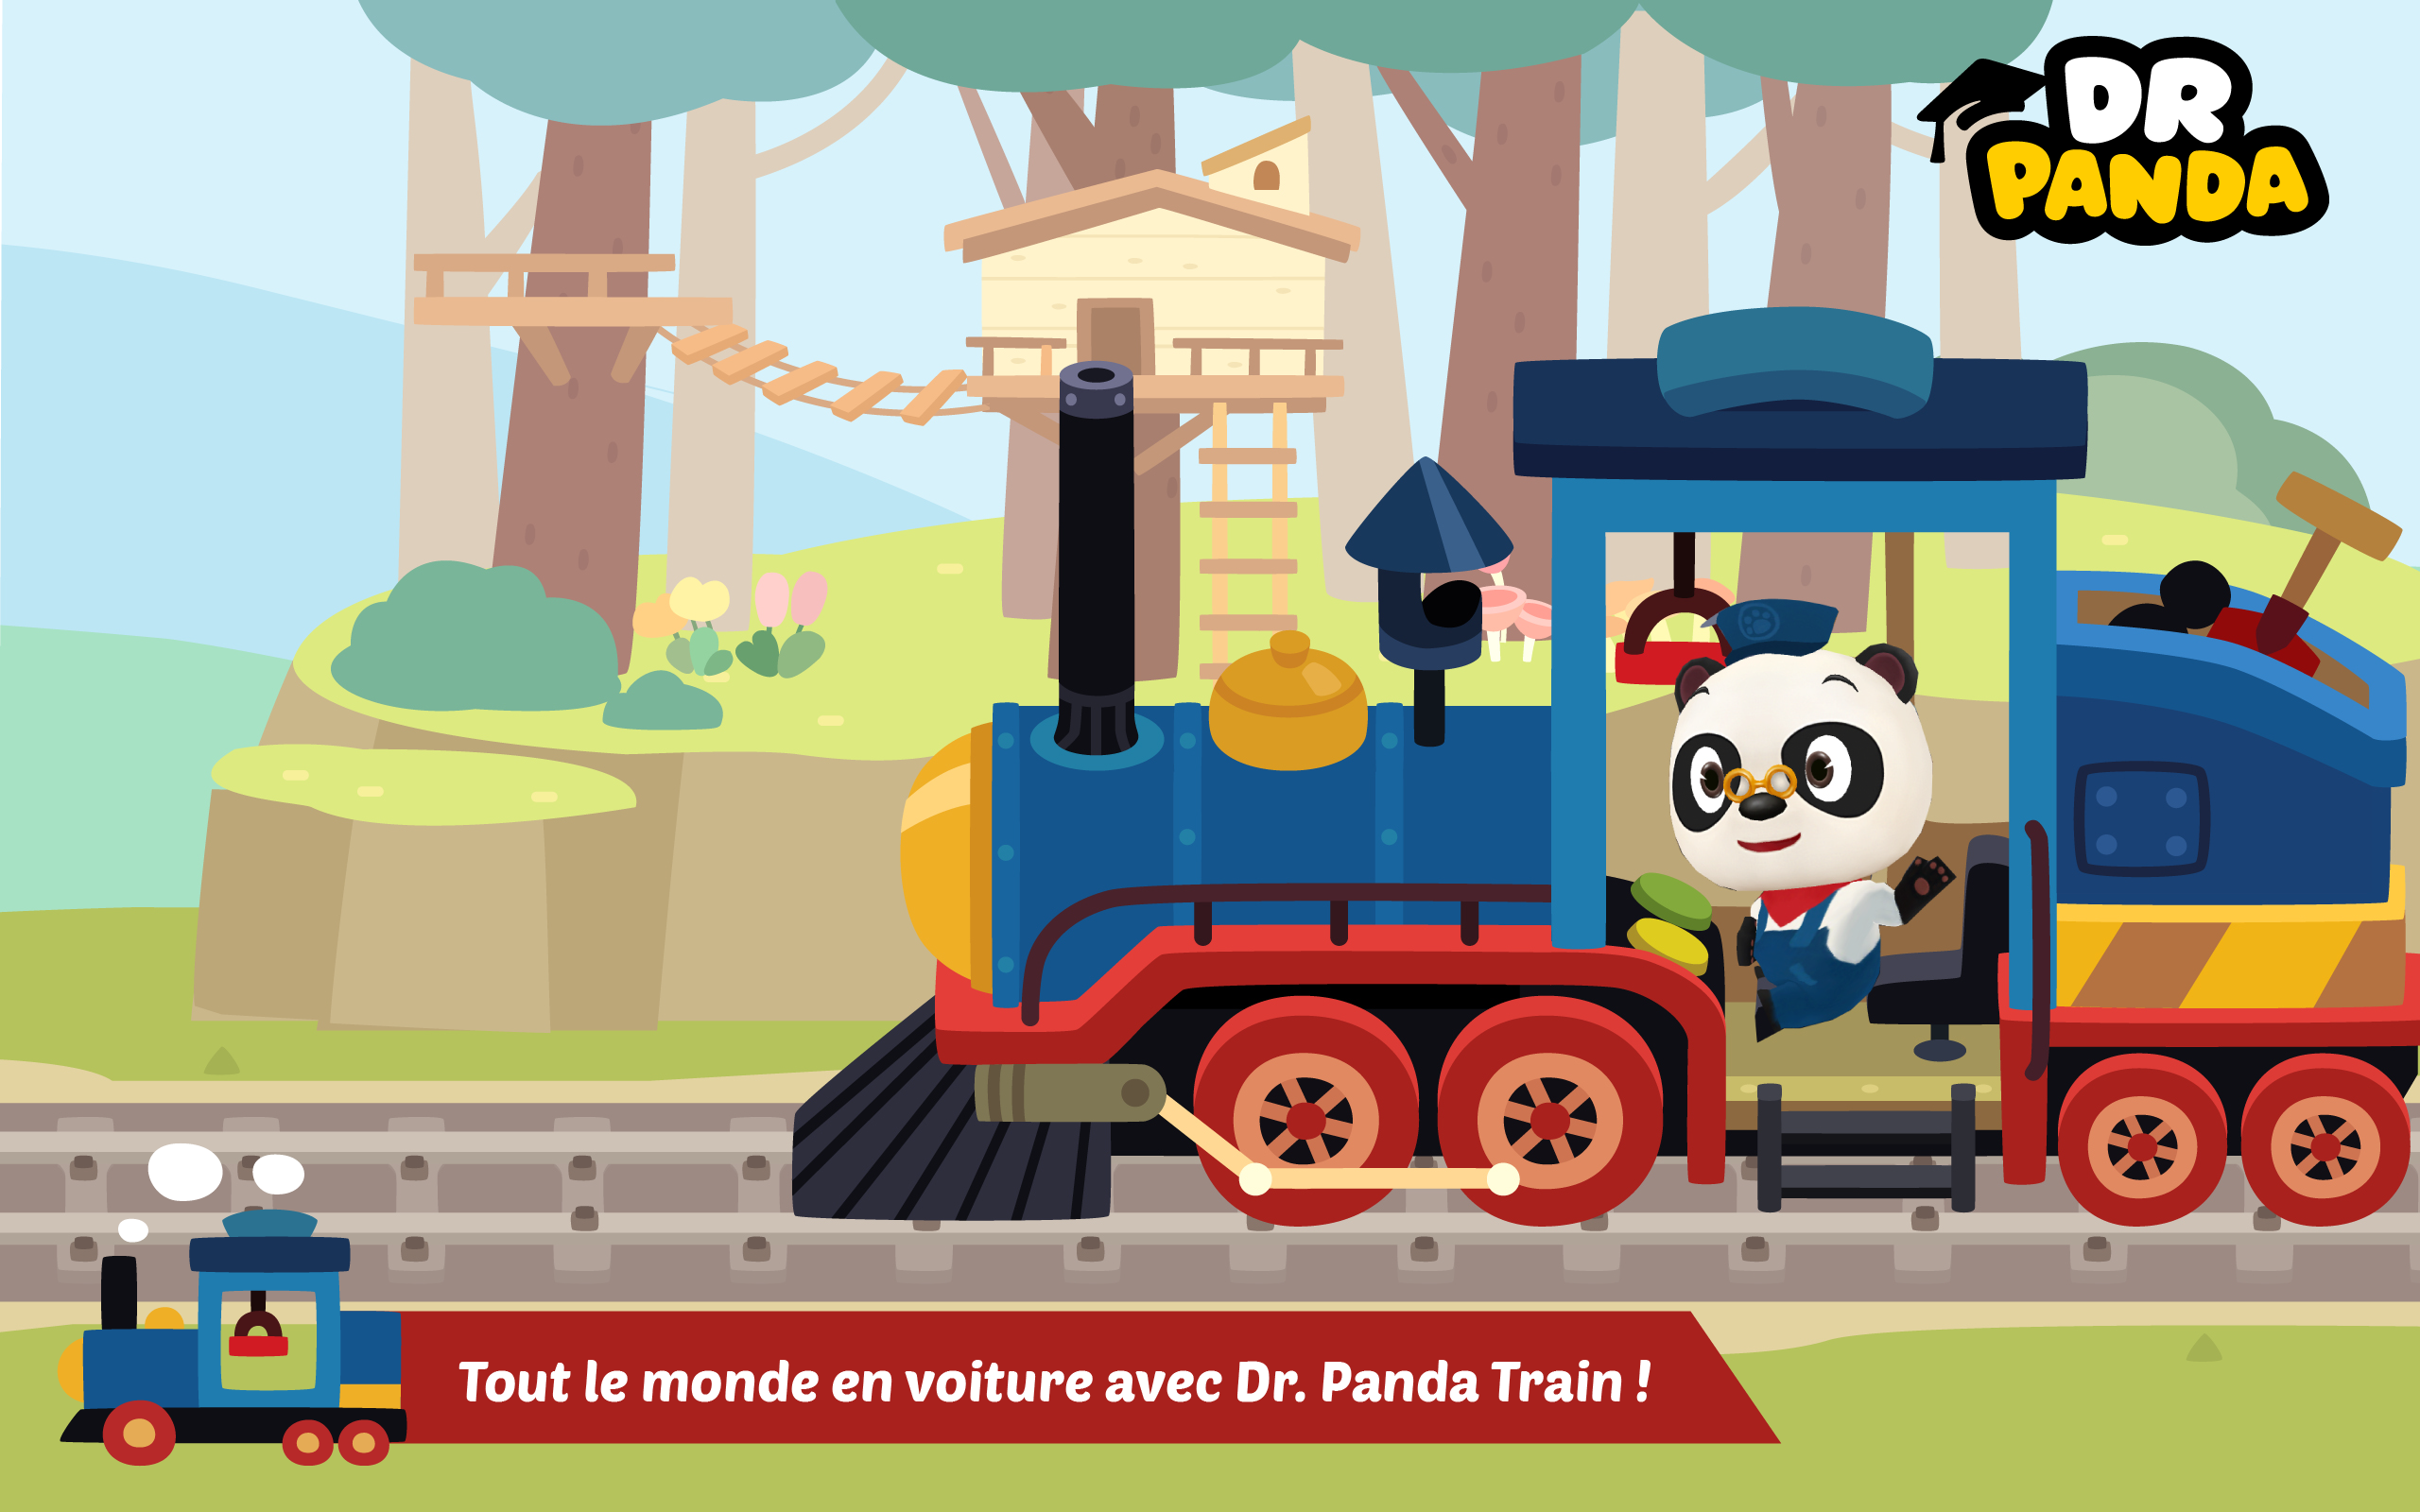 Screenshot 1 of Dr. Panda Train 